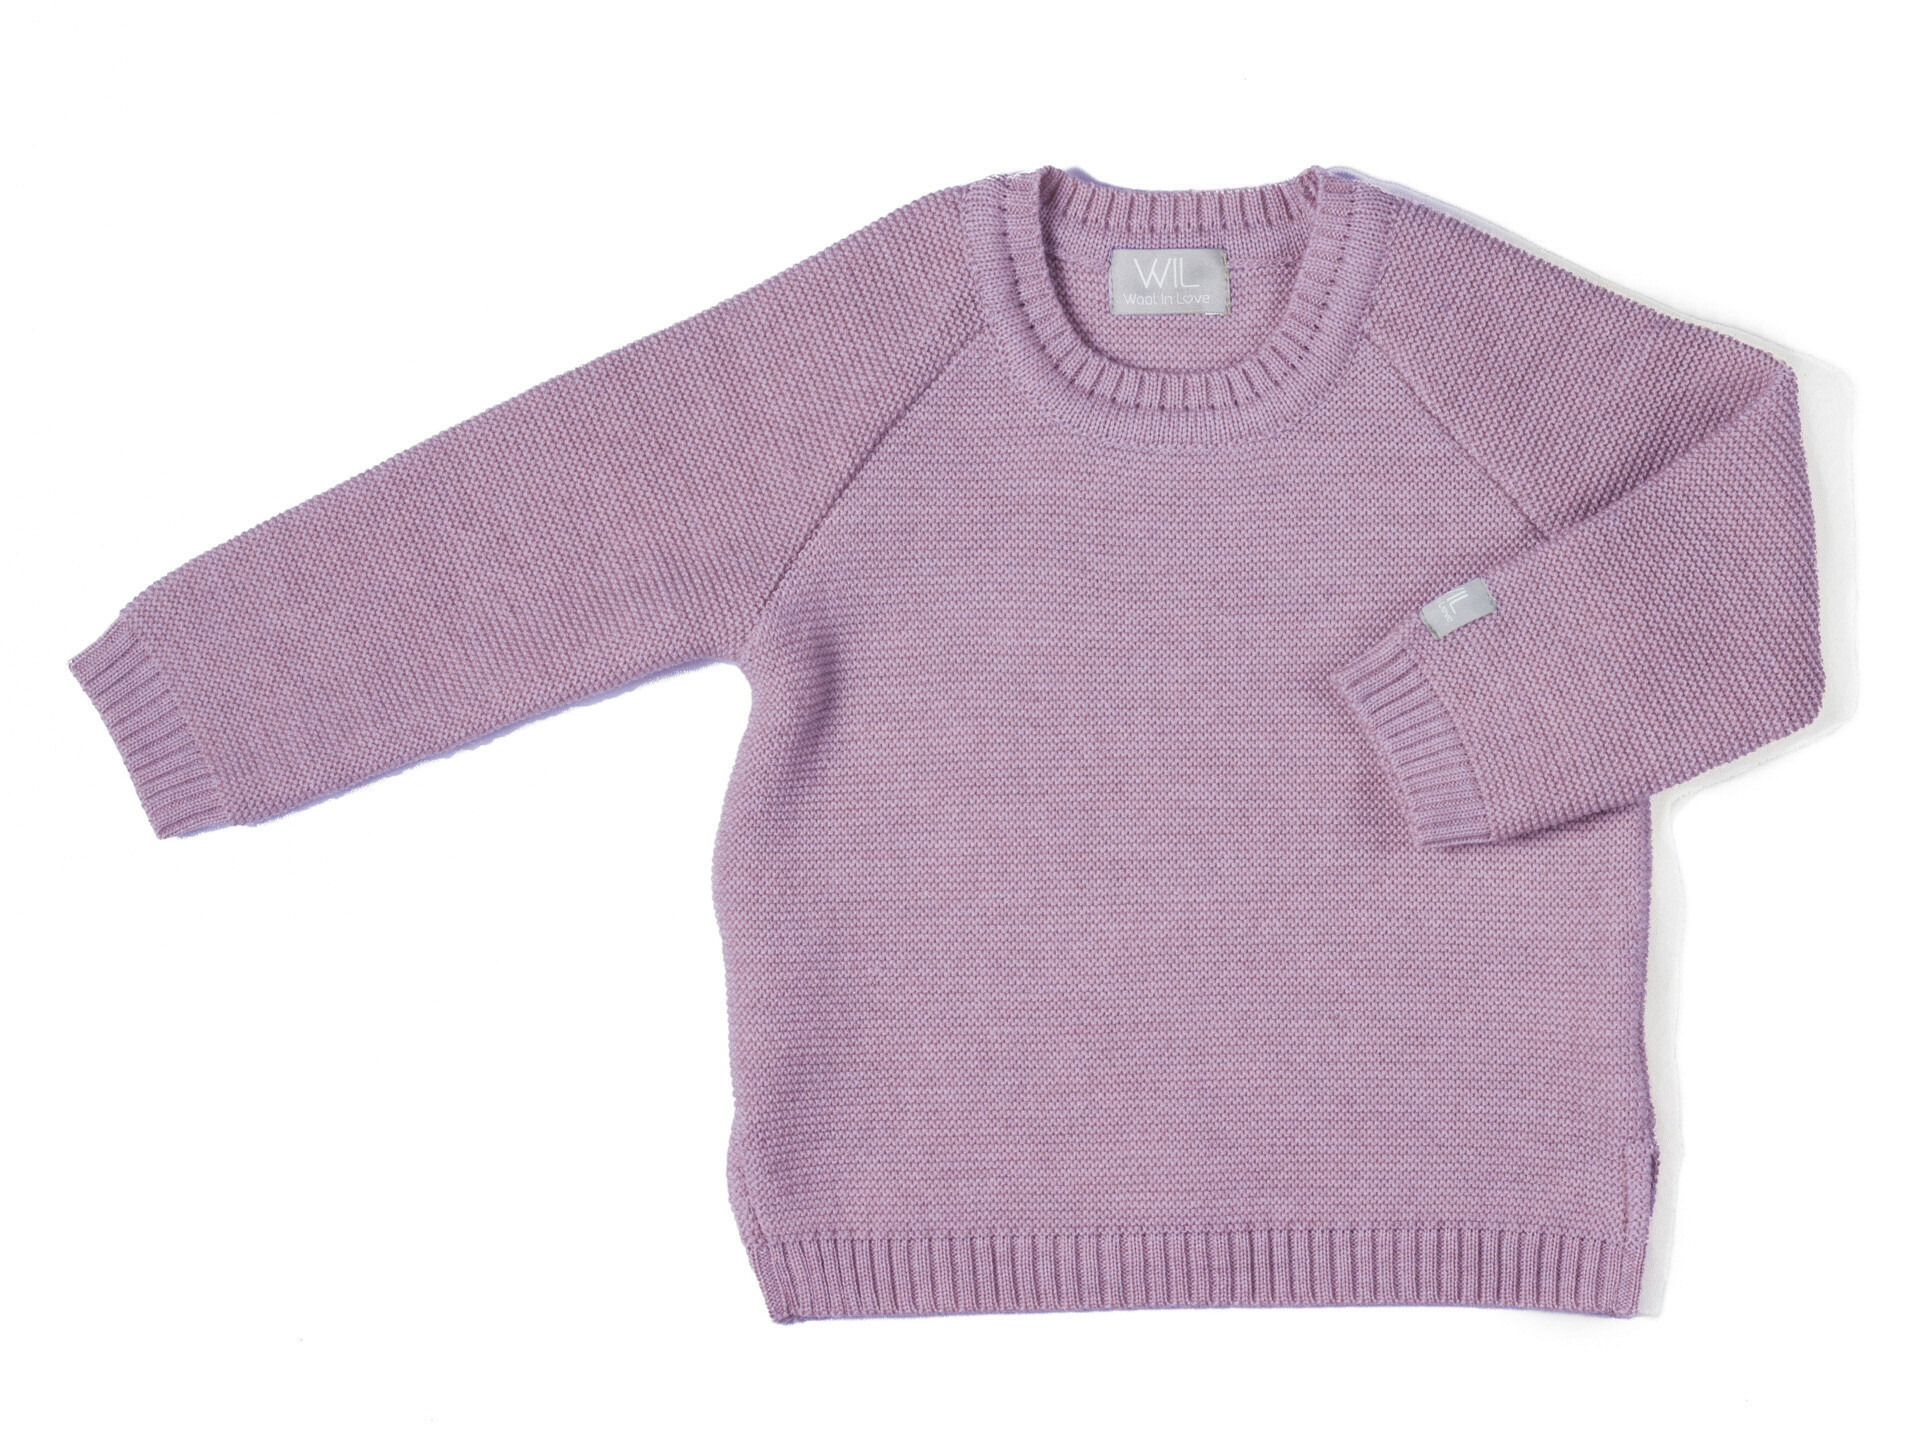 Merino sweater AMITY - Lavendel - 68